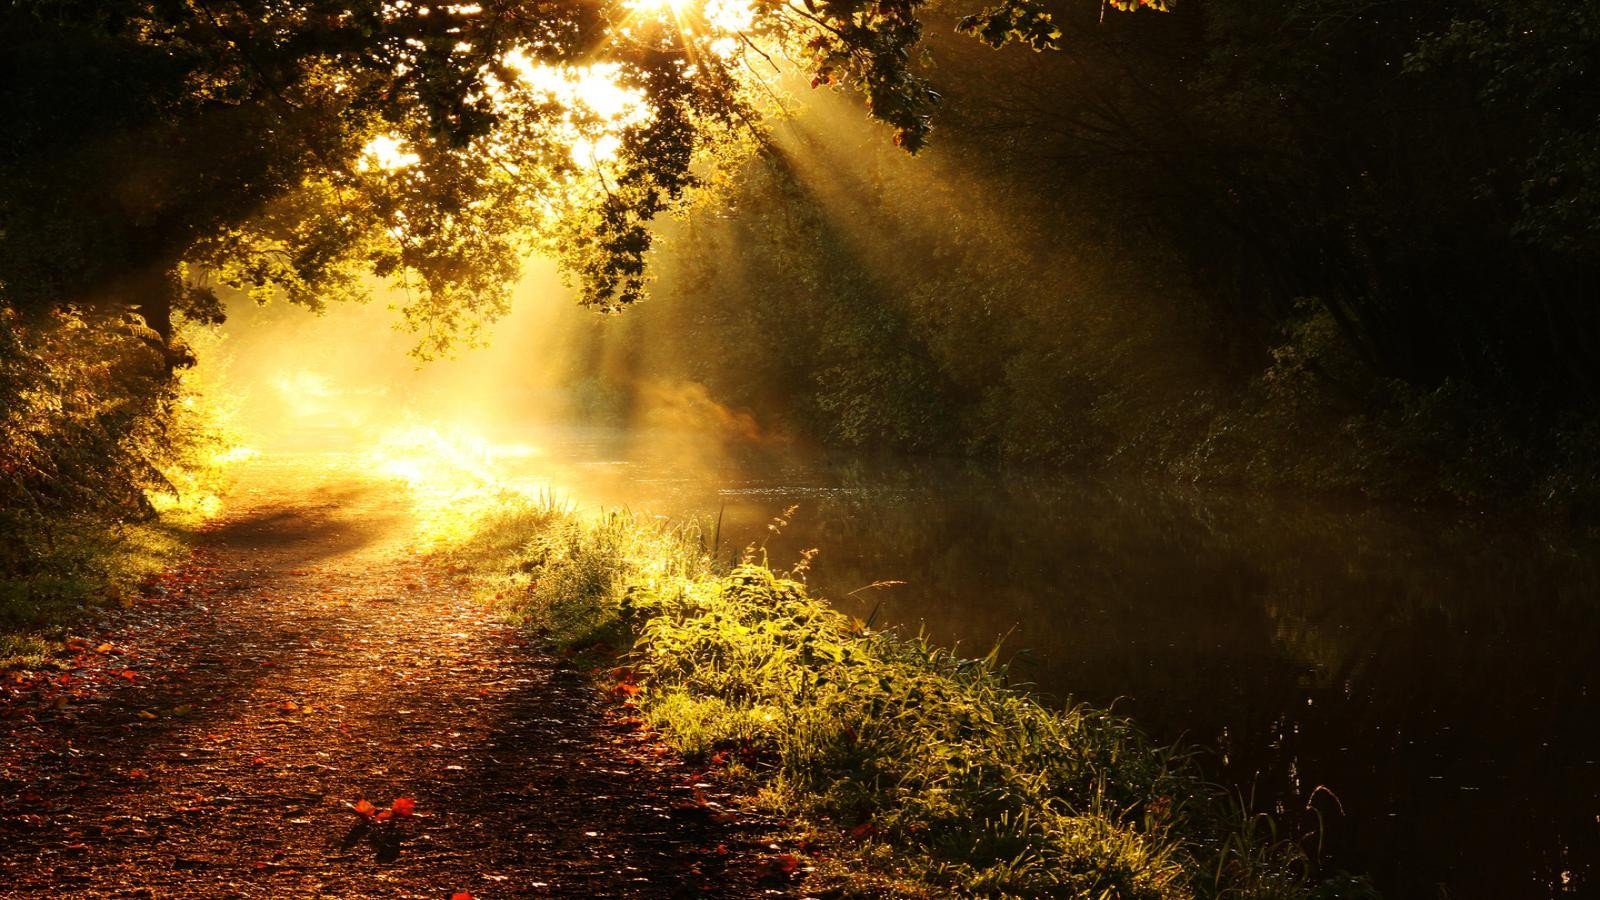 forests, Paths, Golden, Sunlight, Morning, Creek Wallpaper